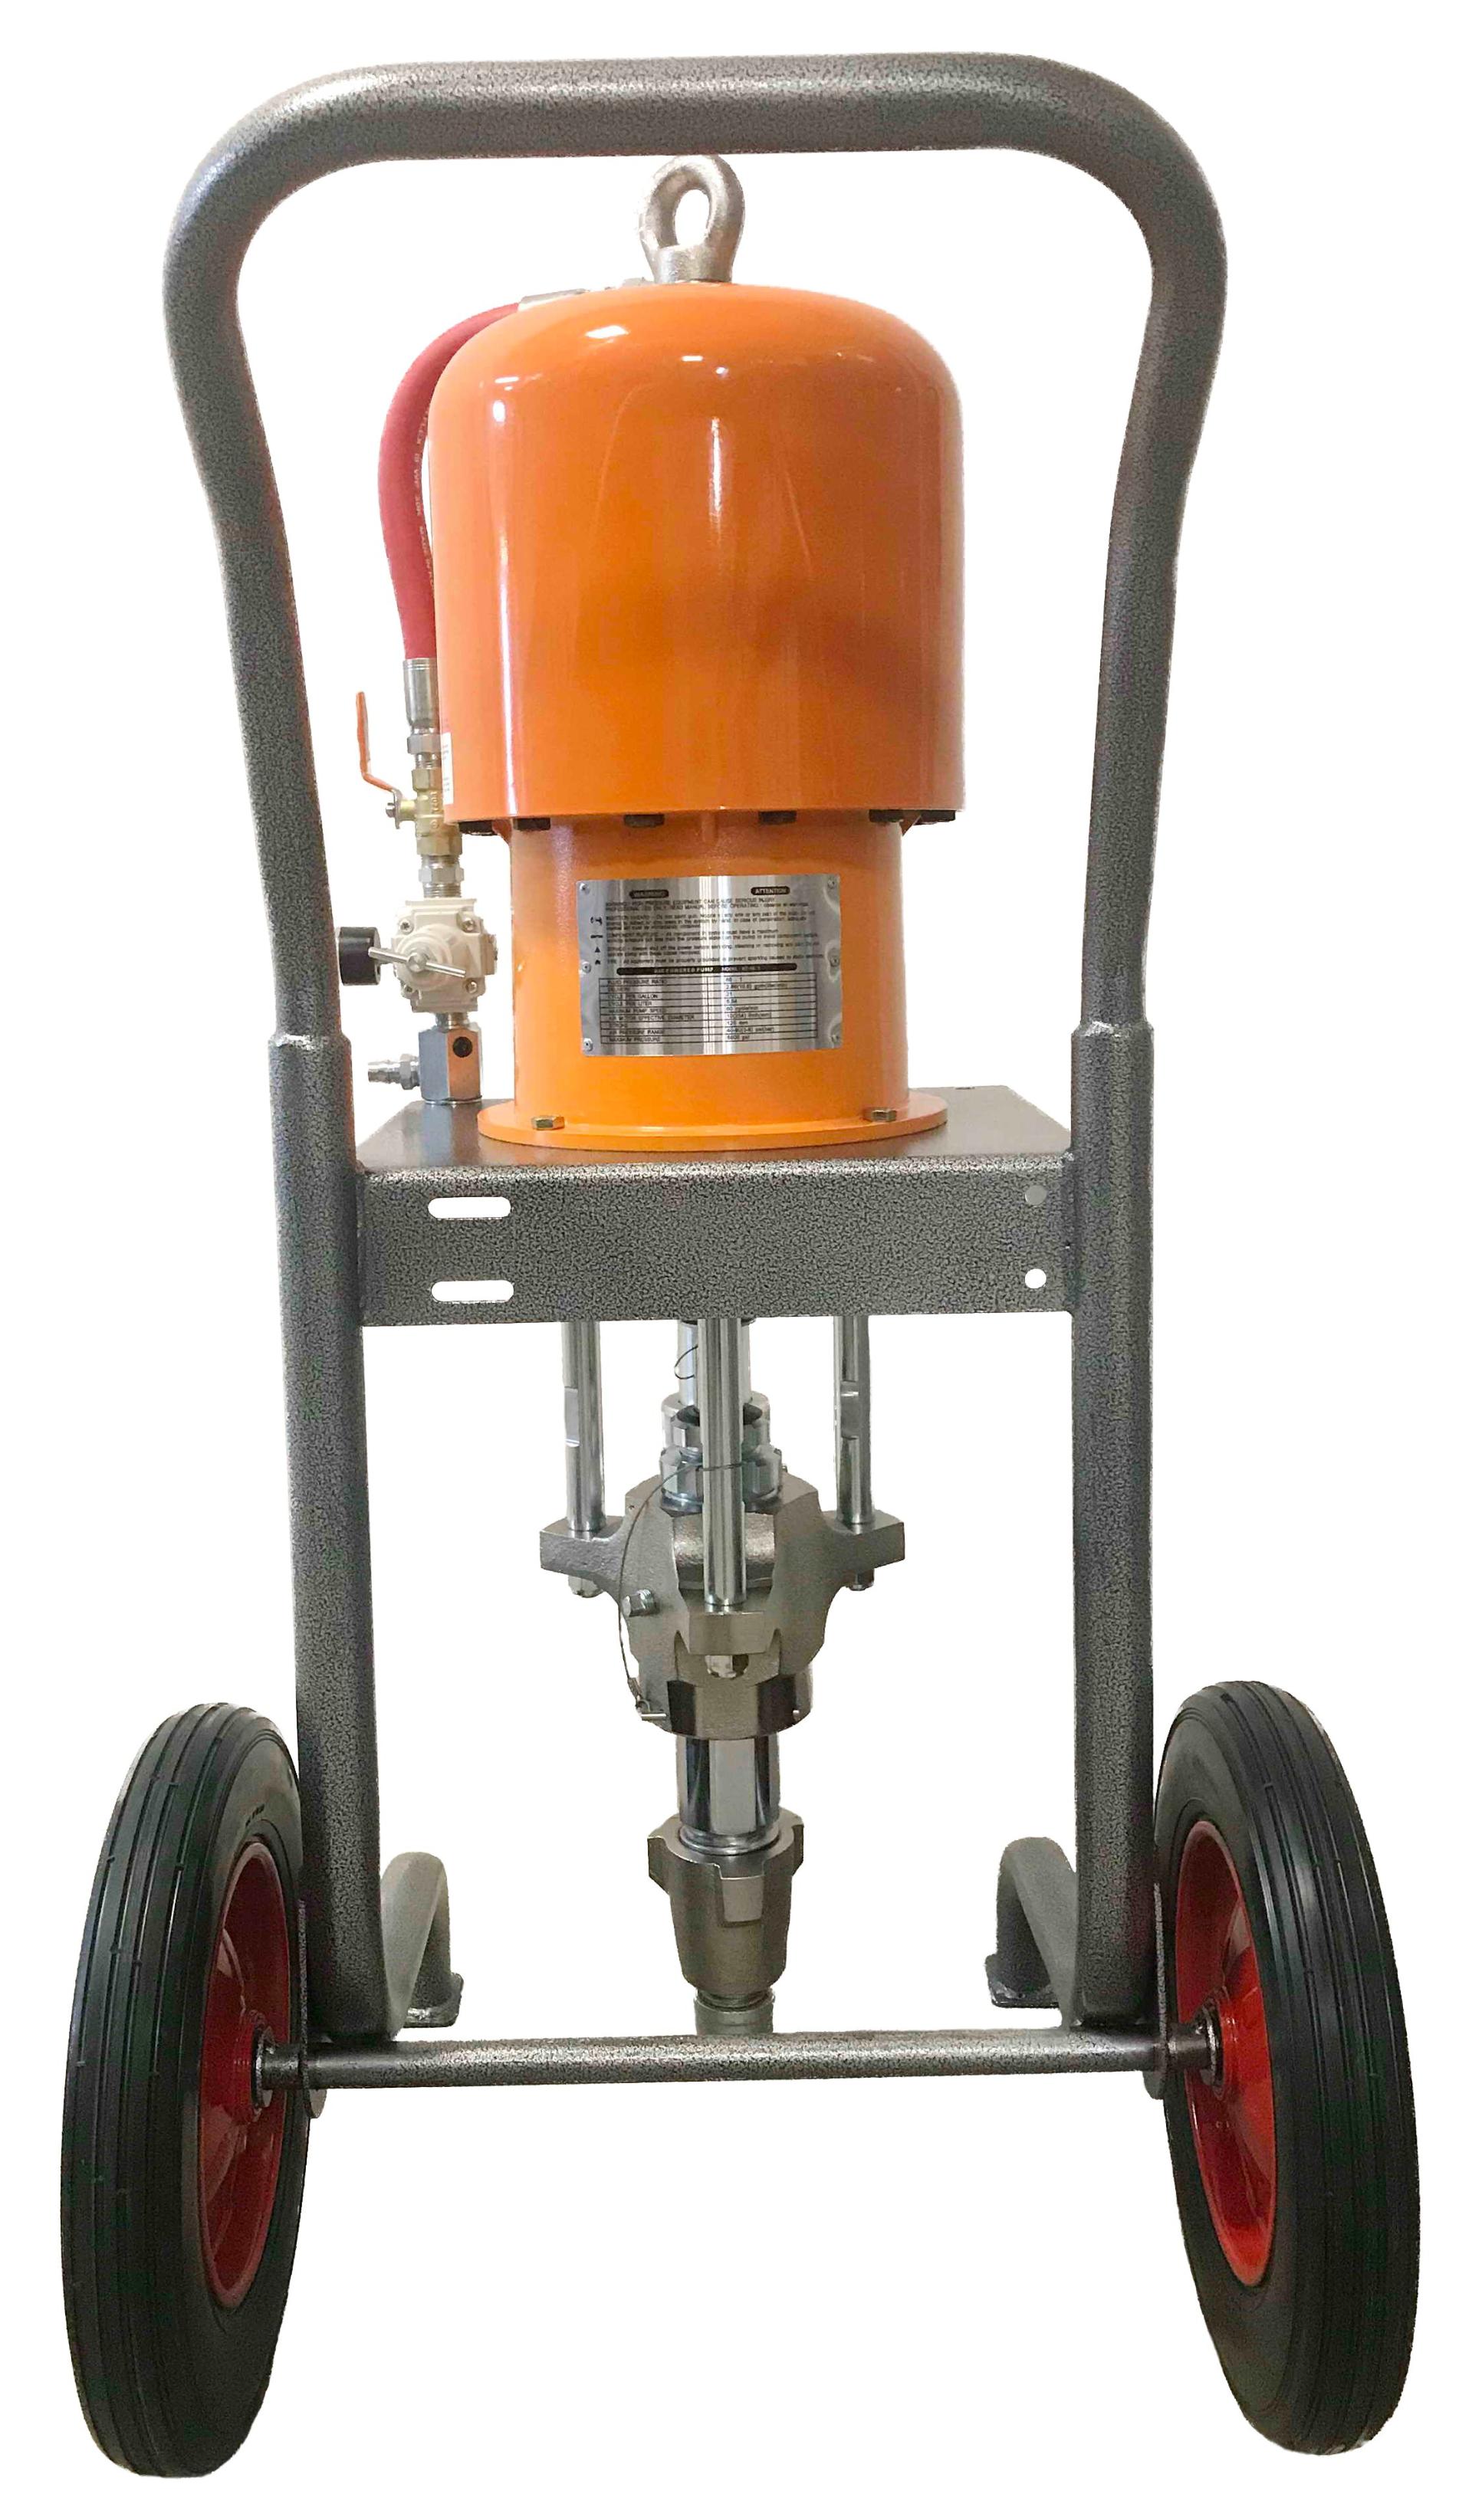 Пневматический аппарат для покраски ASPRO-68:1. 